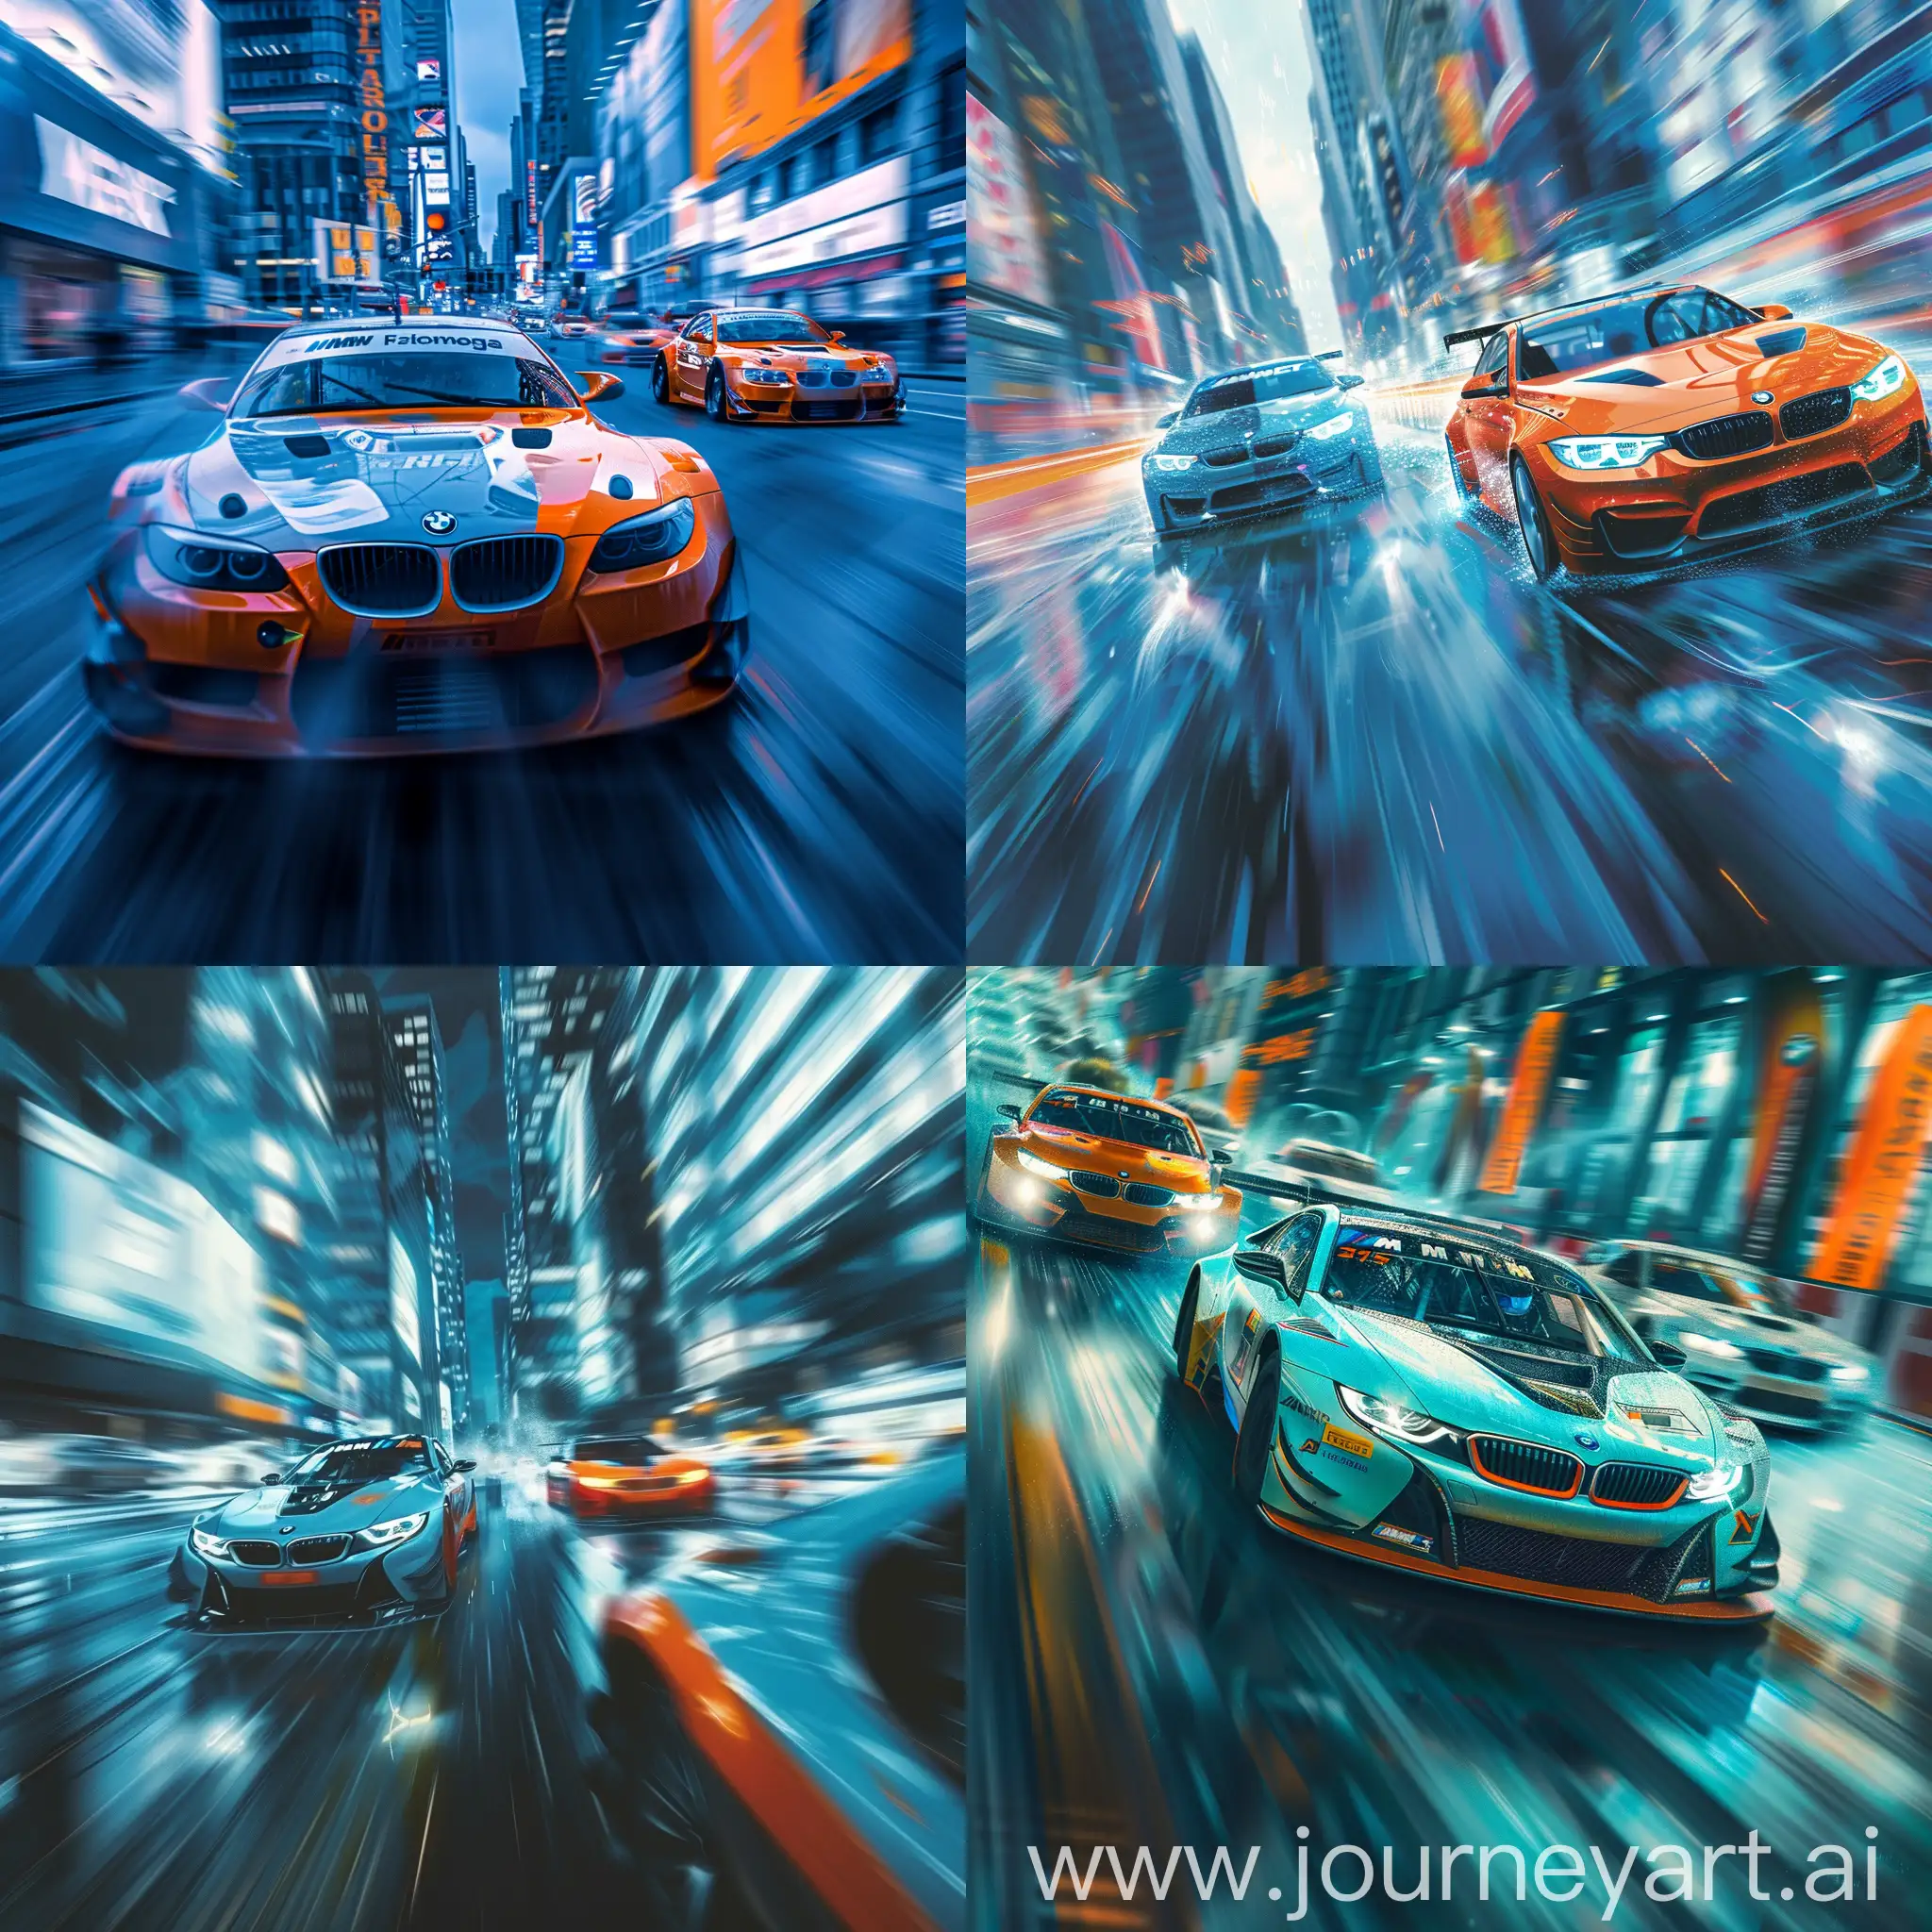 Сцена уличной гонки : автомобили bmw, движущиеся на высокой скорости по мегаполису. Используйте технику динамической размытости и цветовой контраст, подчеркивая холодные синие и горячие оранжевые оттенки для создания ощущения скорости и технологичности